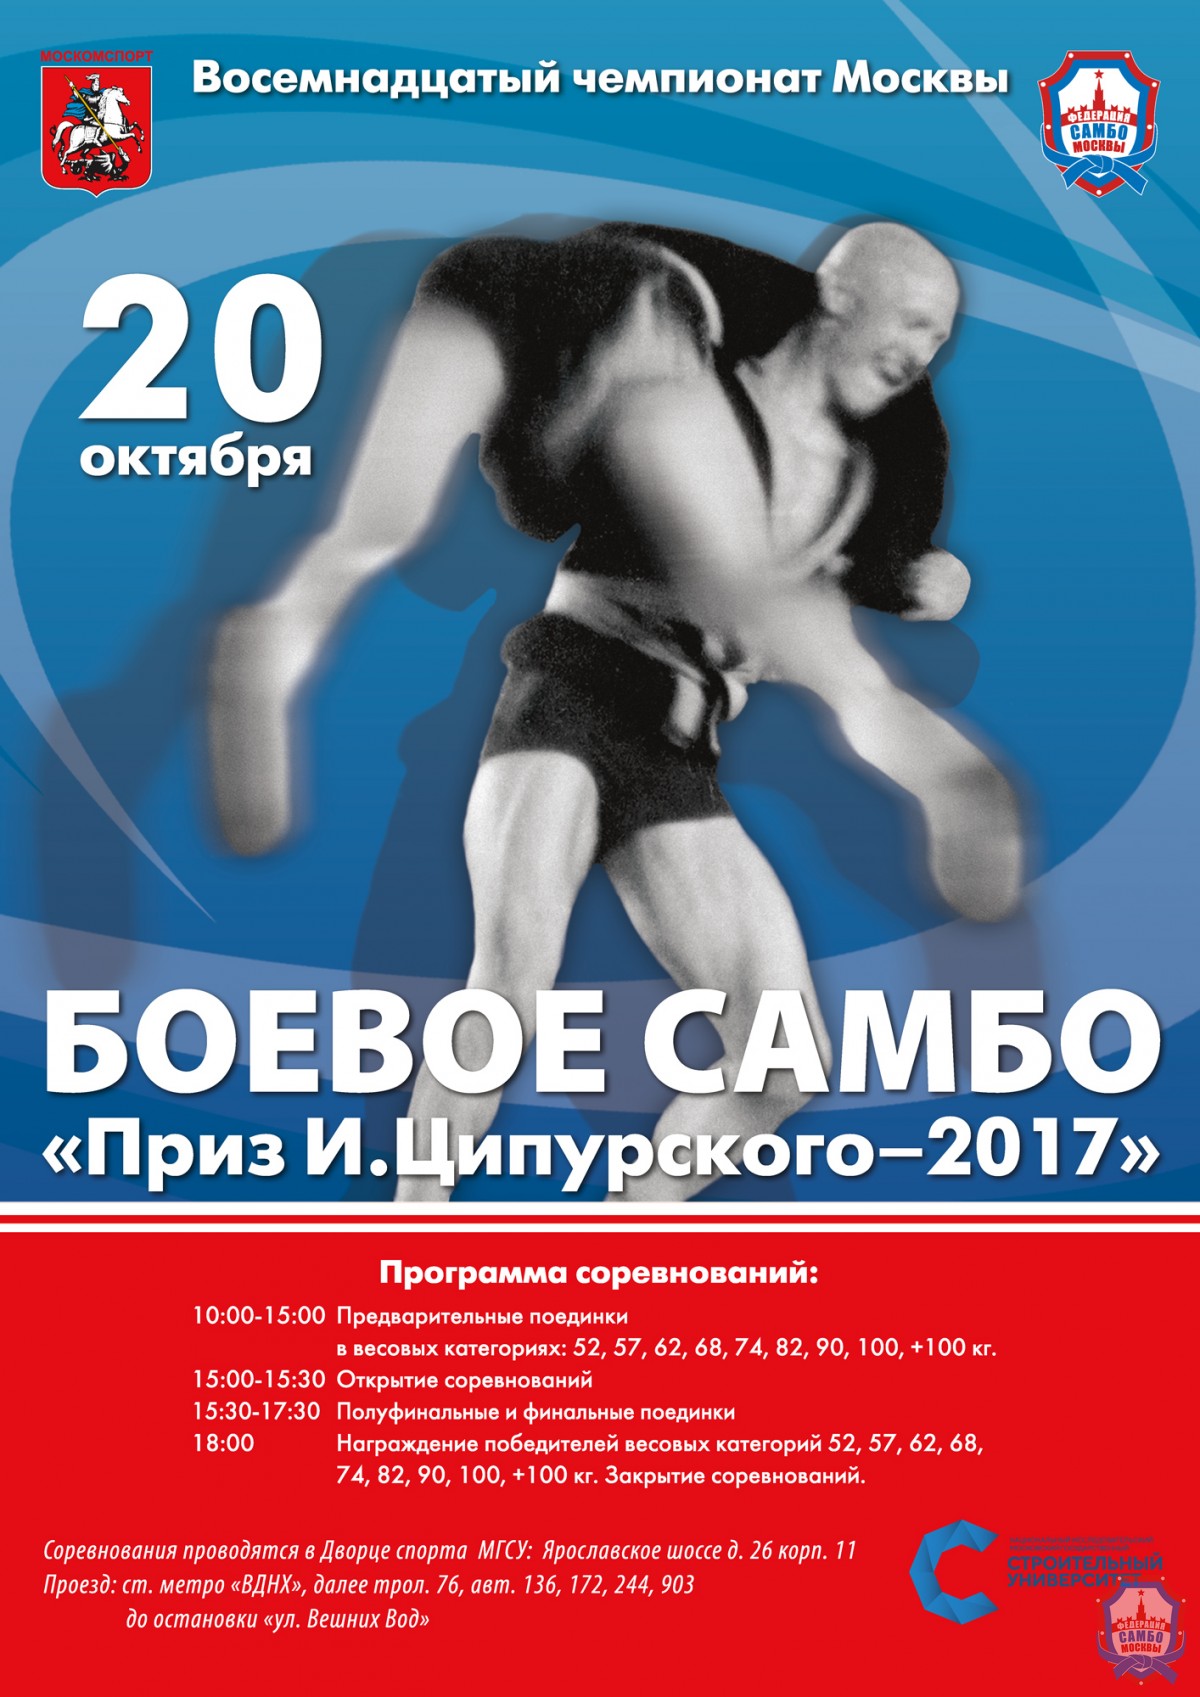 20 октября состоится XVIII Чемпионат Москвы по боевому самбо «Приз И. Ципурского»